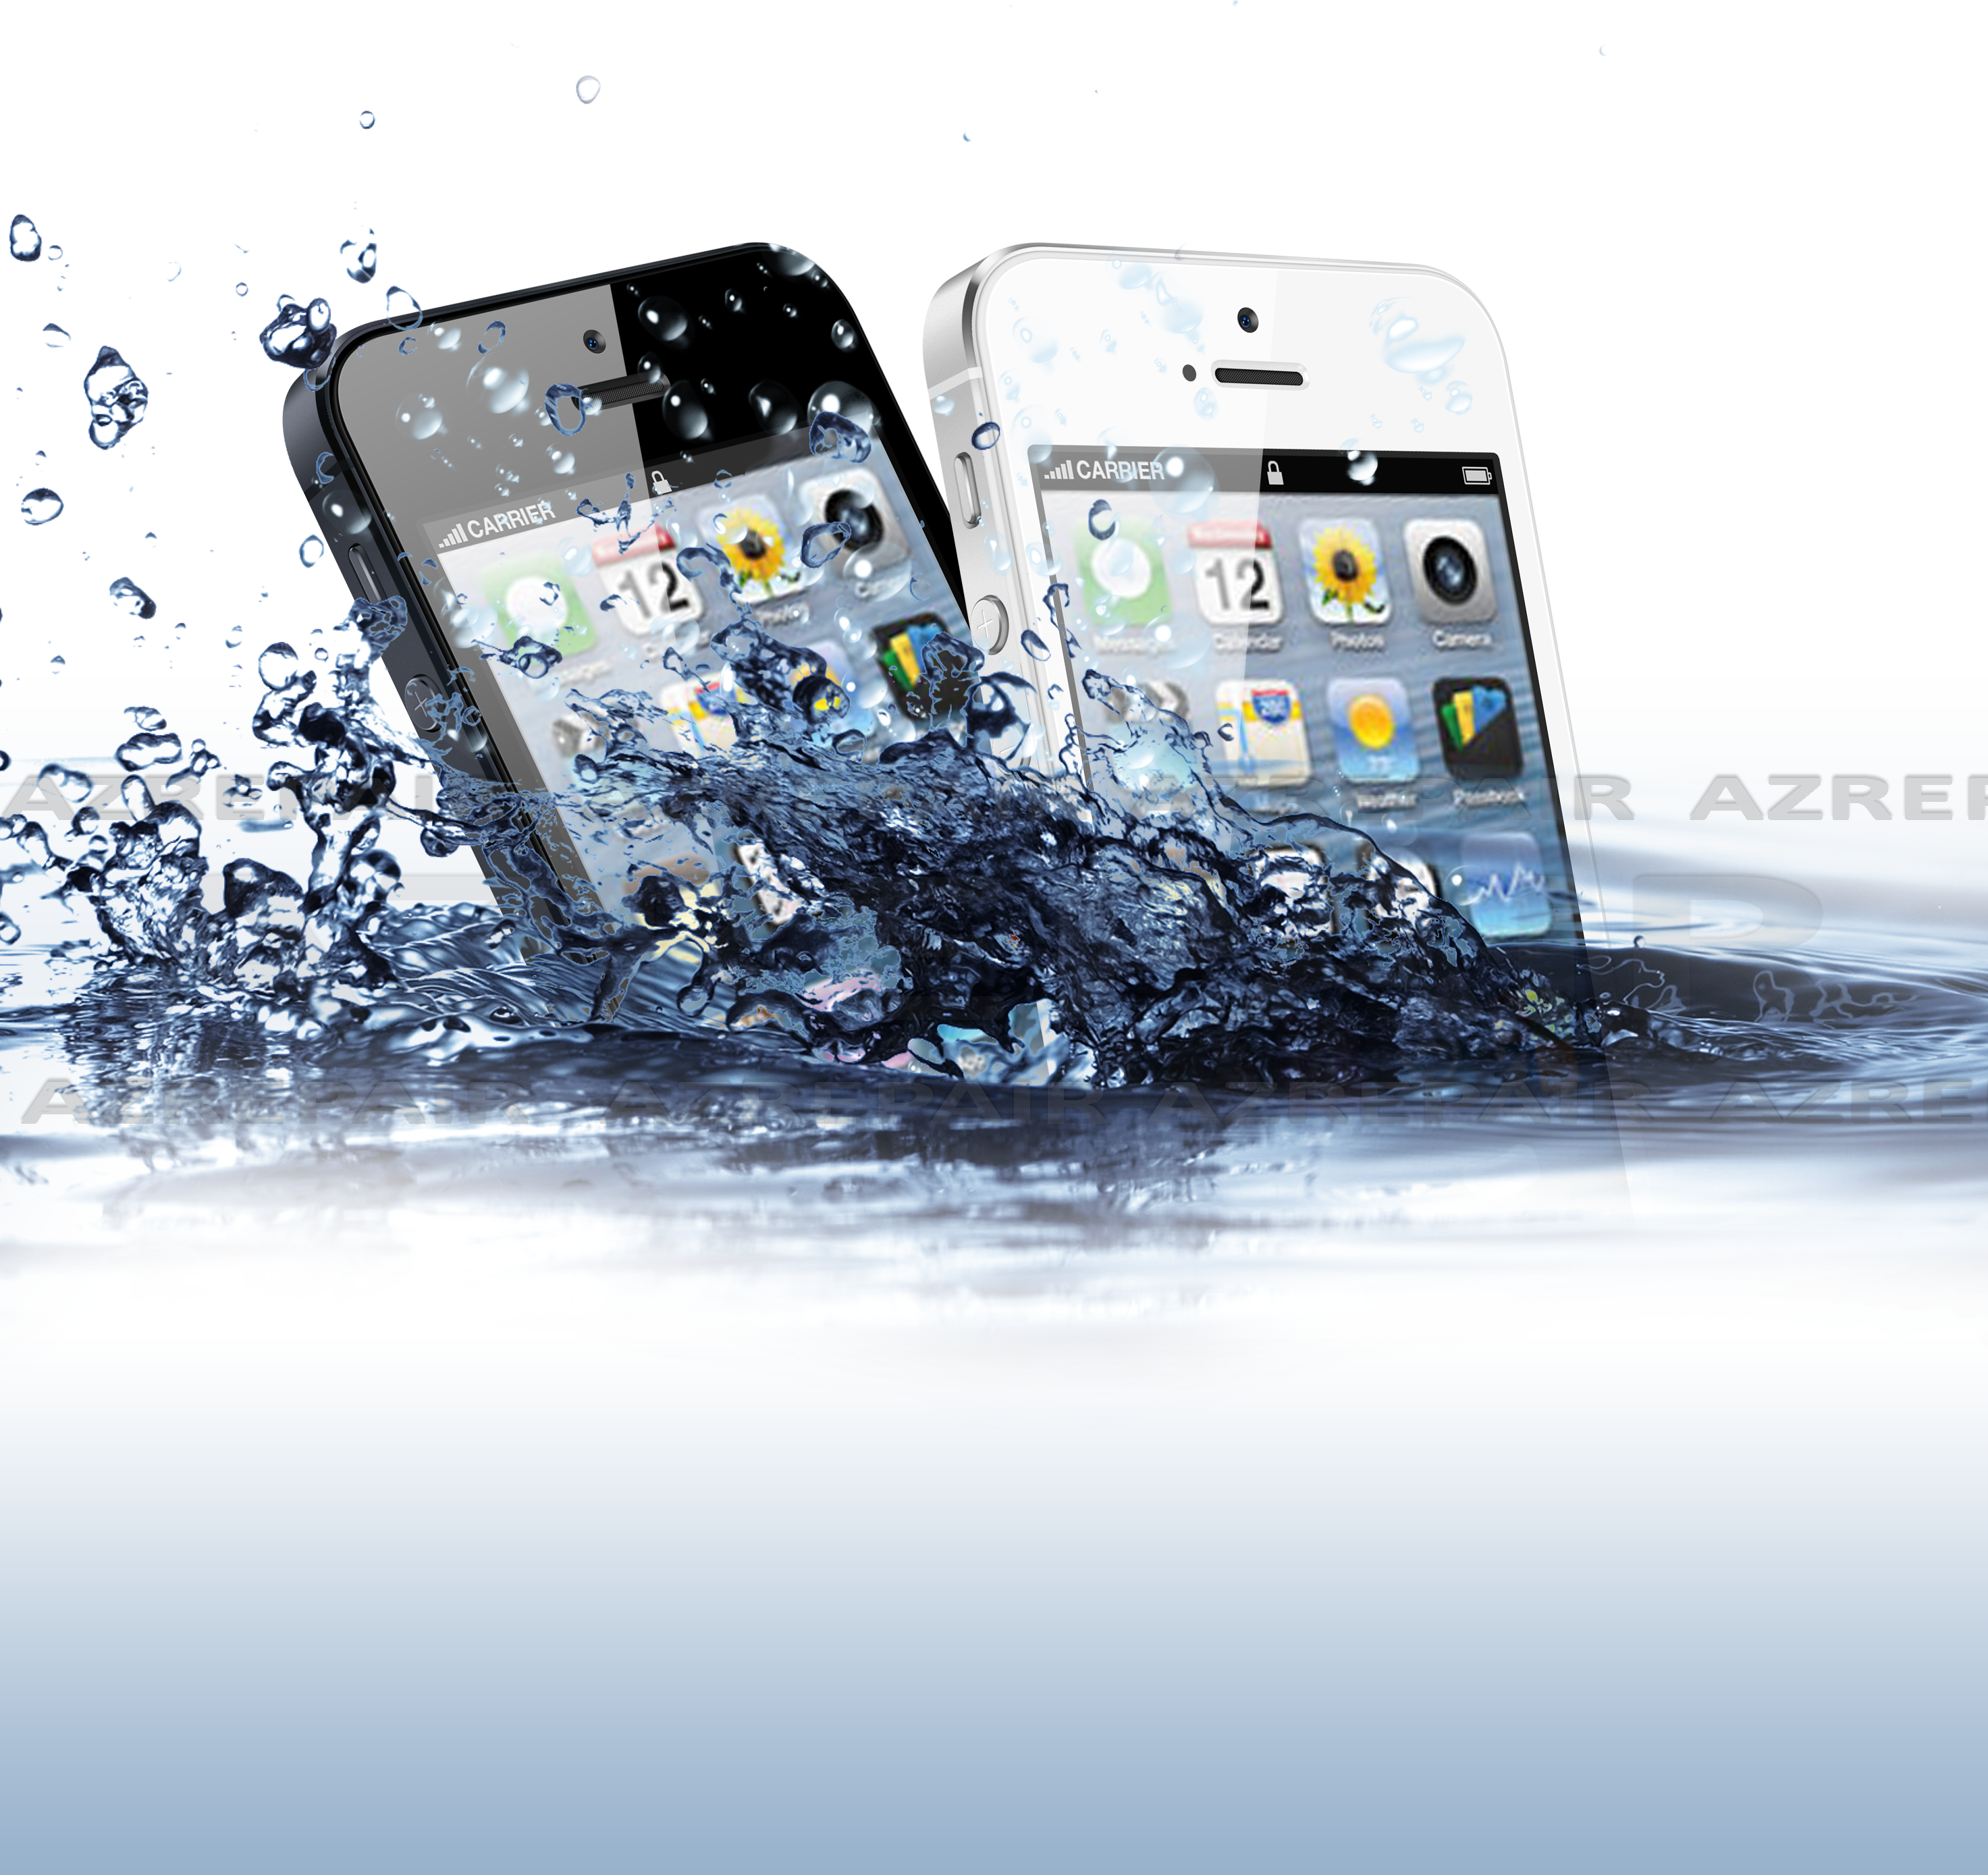 iPhone 5 Réparation, désoxydation d'un iPhone 5 tombé dans l'eau